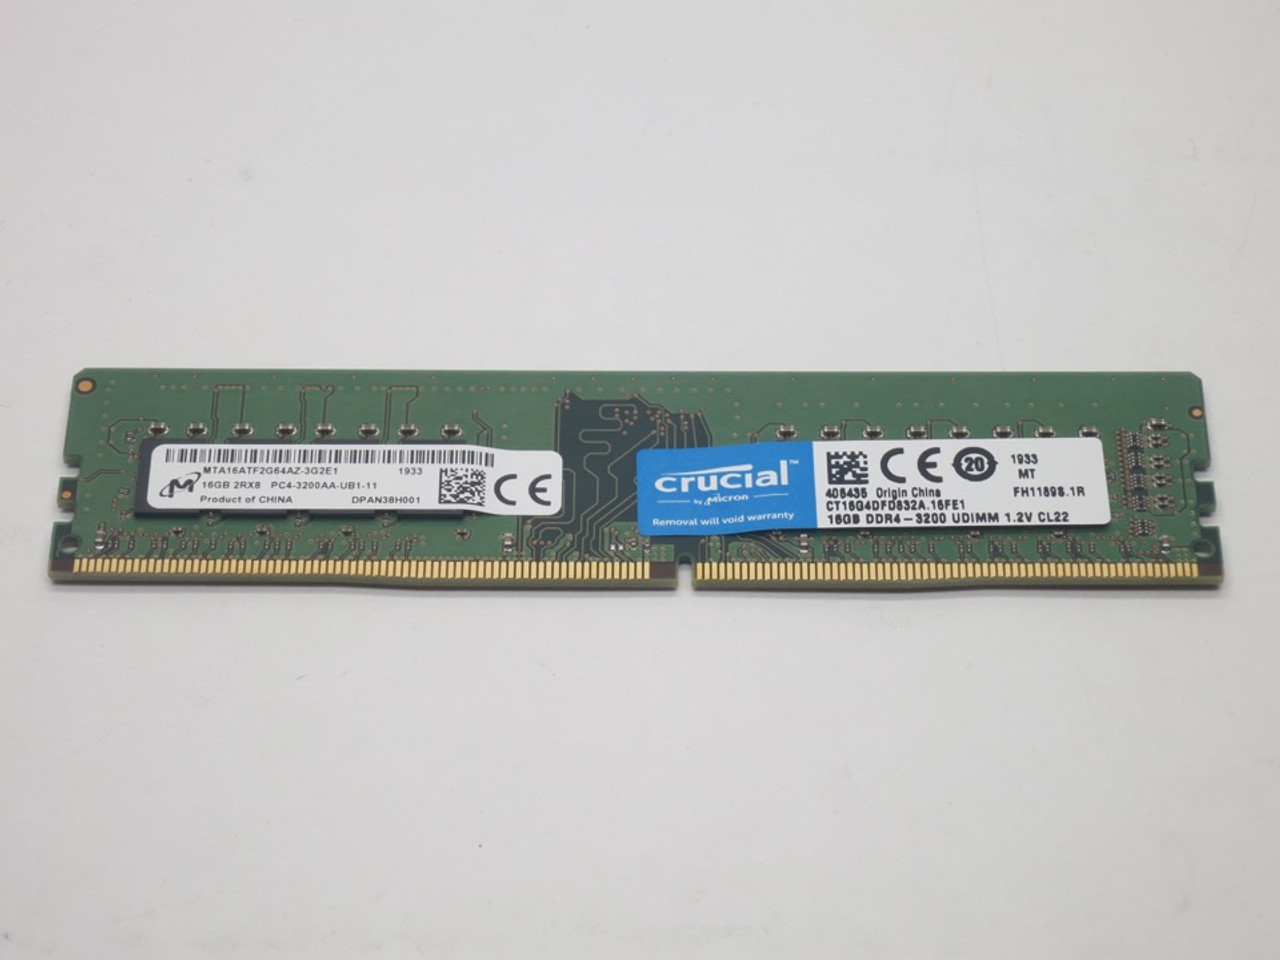 Crucial : 16GB DDR4-3200 UDIMM